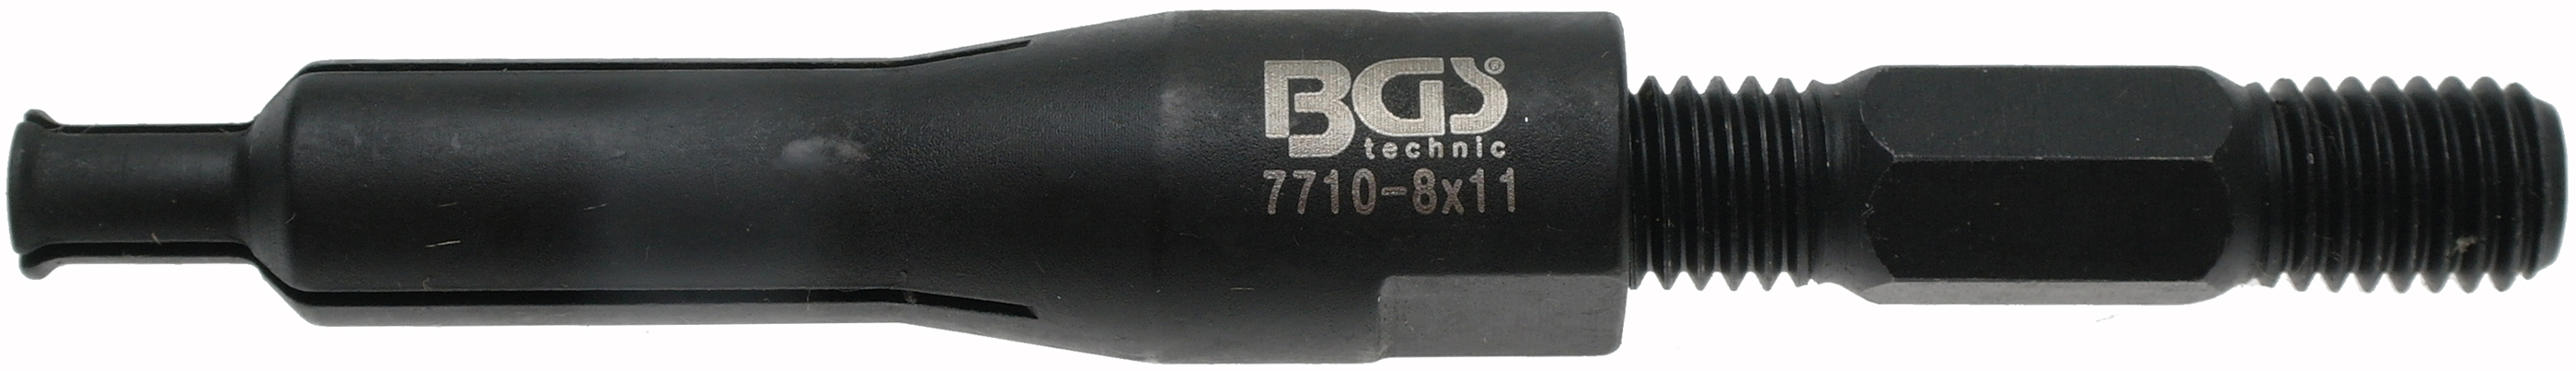 BGS 7710-8x11 Presa extractoare de interior pentru rulmenti cu diametre intre 8-11mm